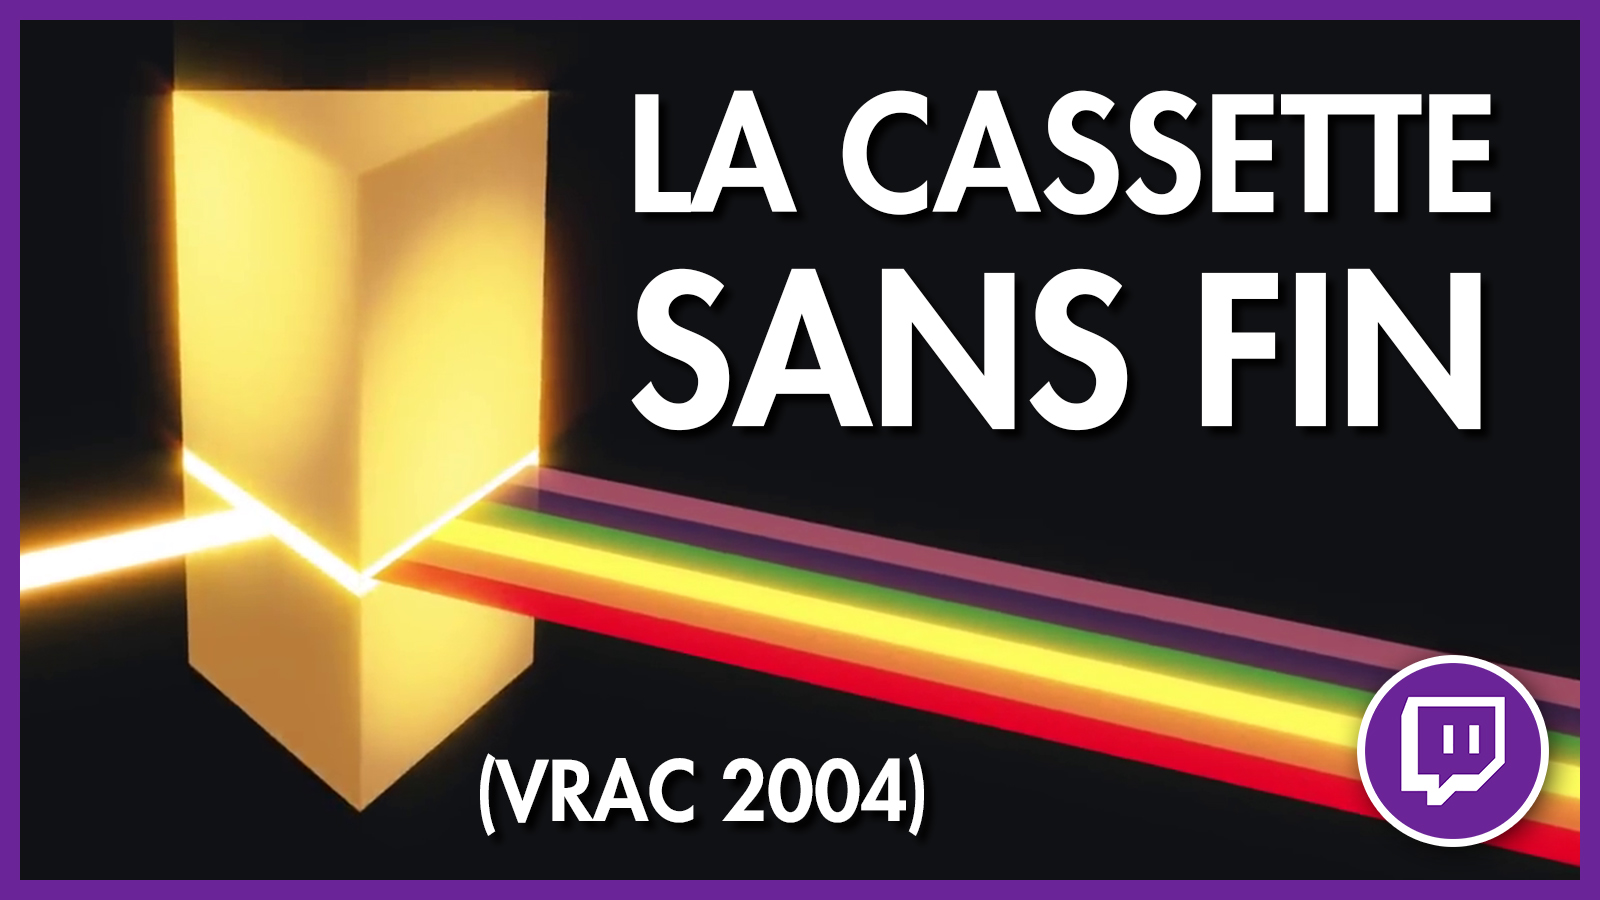 VHS MYSTÉRIEUSES #5 – La cassette sans fin (Vrac 2004)